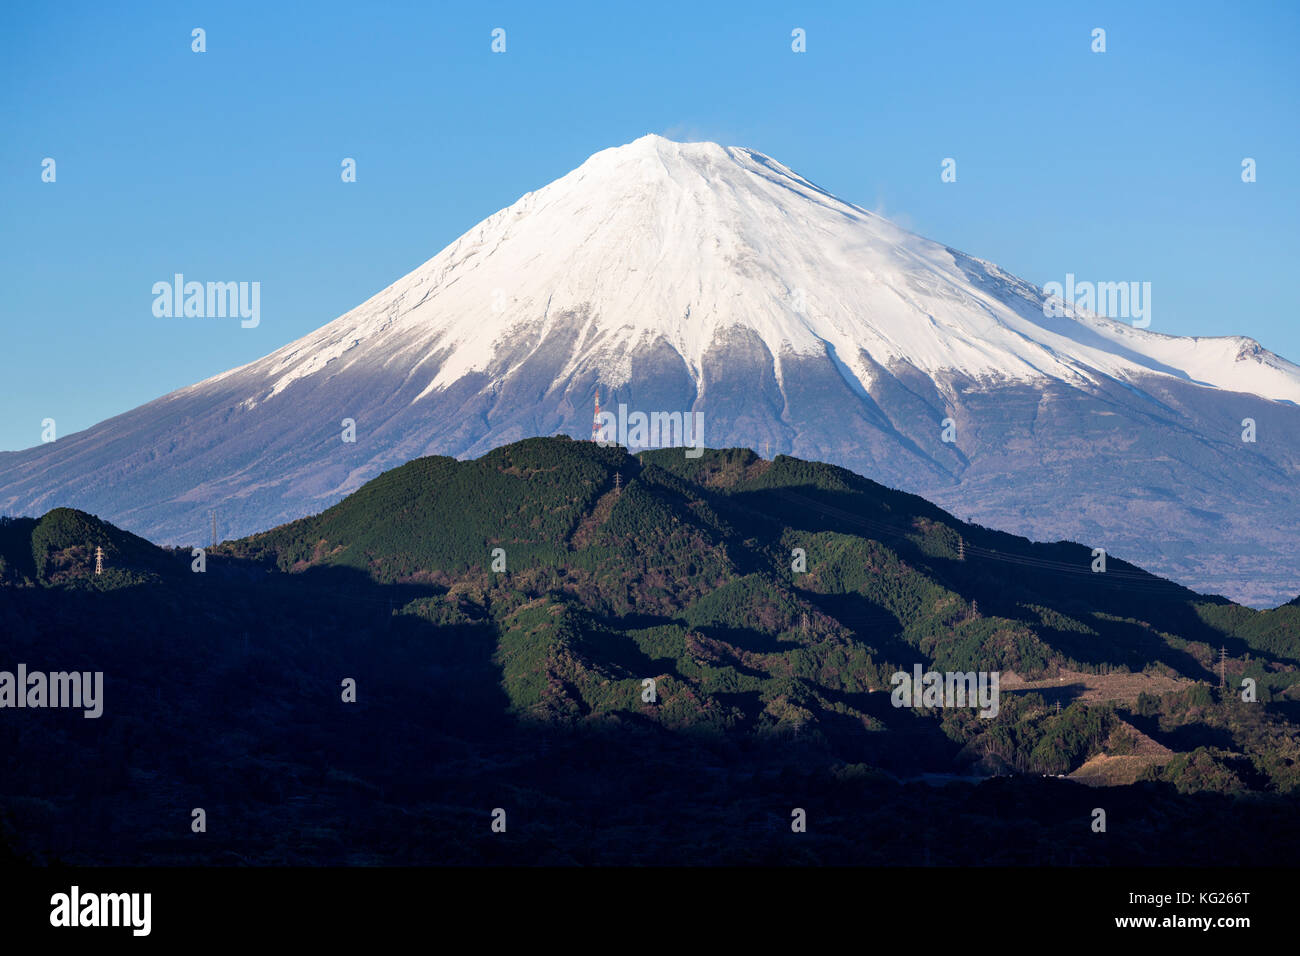 Il monte Fuji, sito patrimonio mondiale dell'unesco, fuji-Hakone-izu national park, shizuoka, Honshu, Giappone, Asia Foto Stock